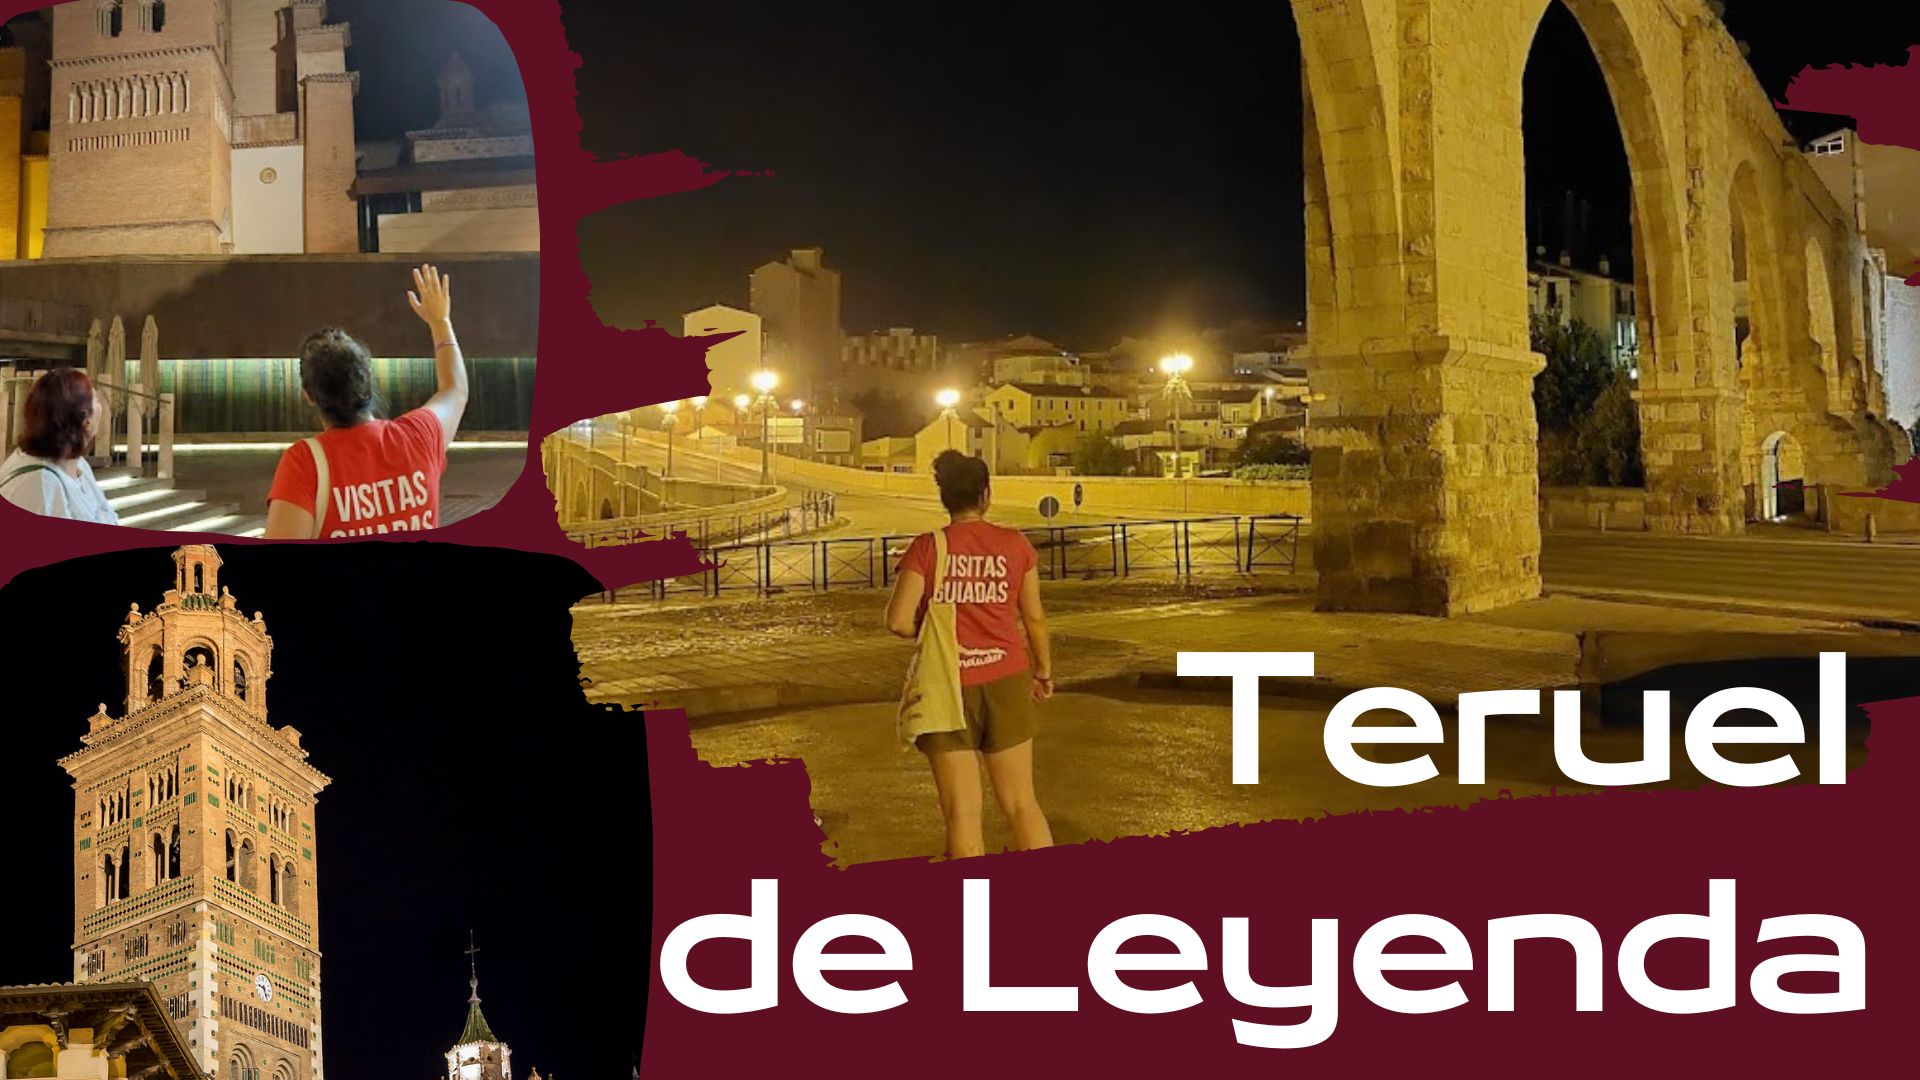 Modalidad de visita guiada en Teruel: Teruel Nocturno, Teruel de Leyendas